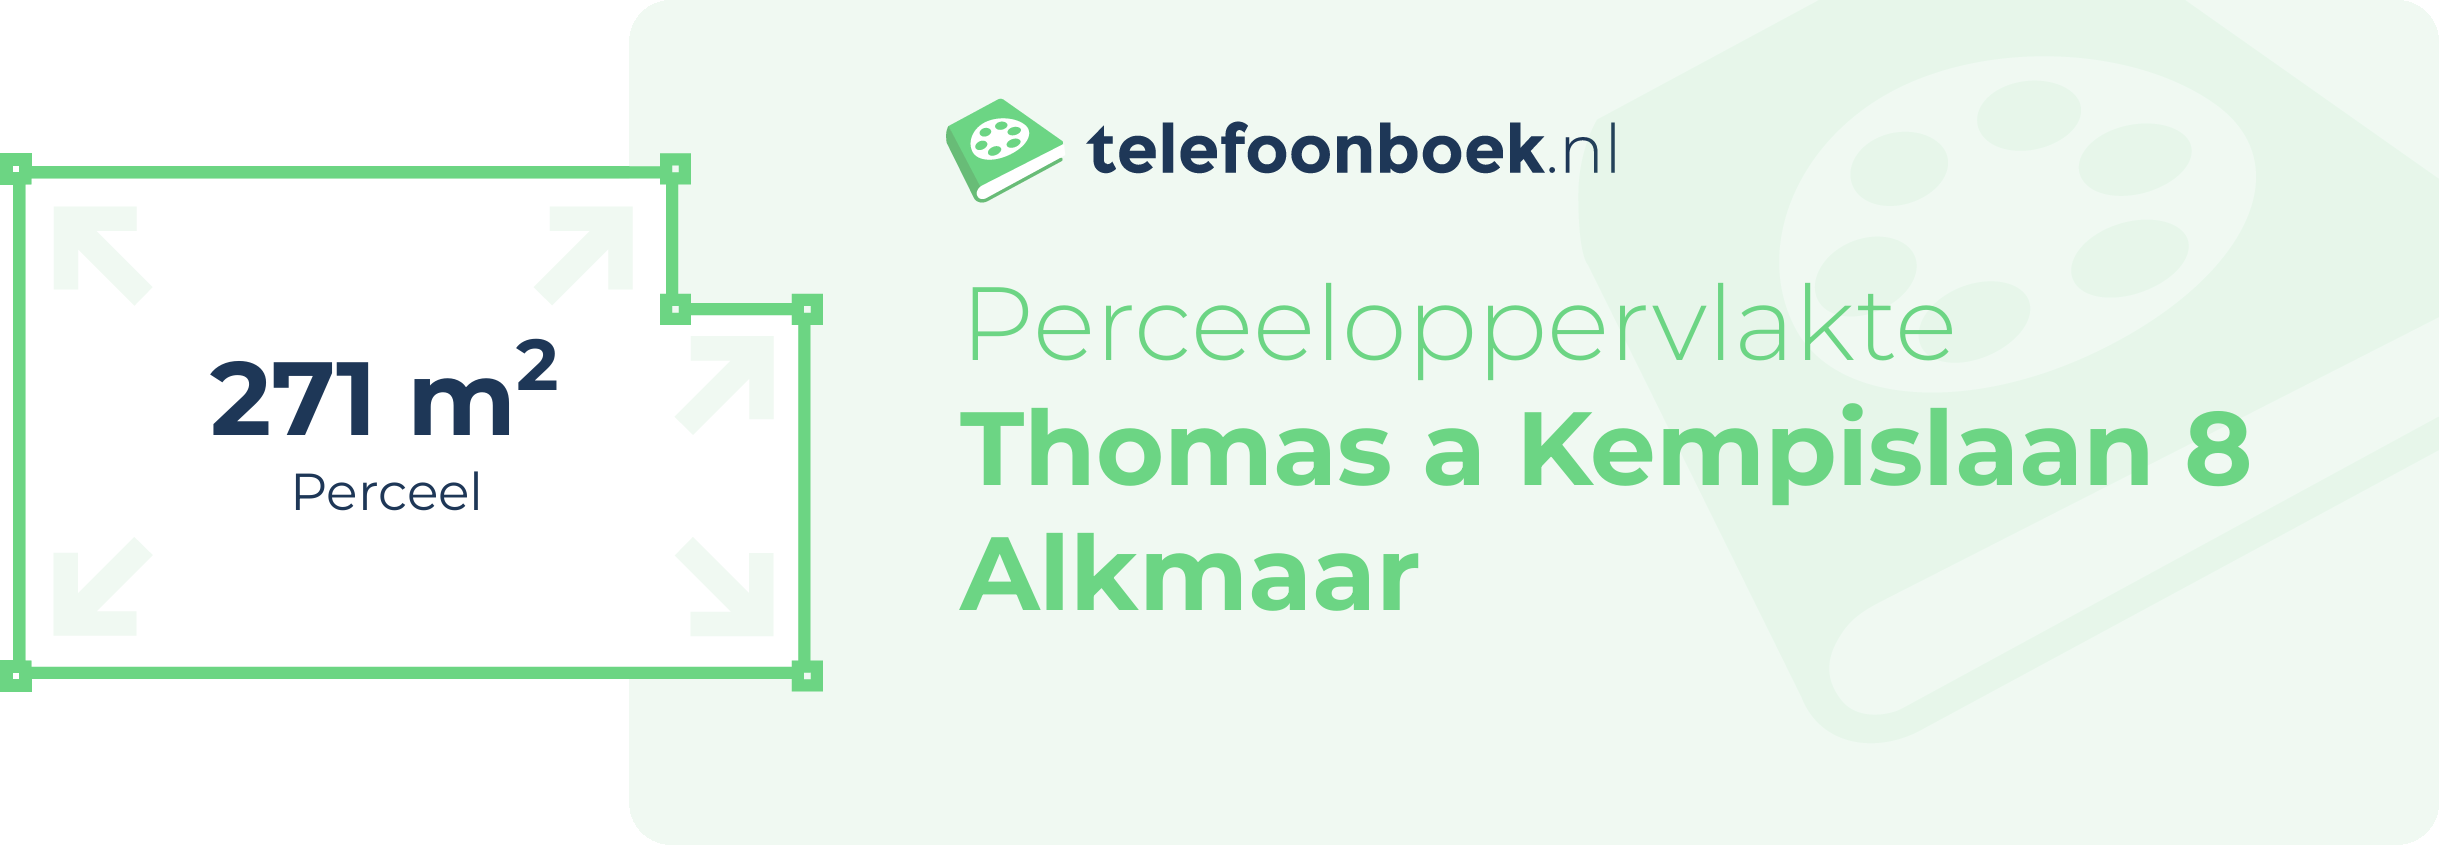 Perceeloppervlakte Thomas A Kempislaan 8 Alkmaar